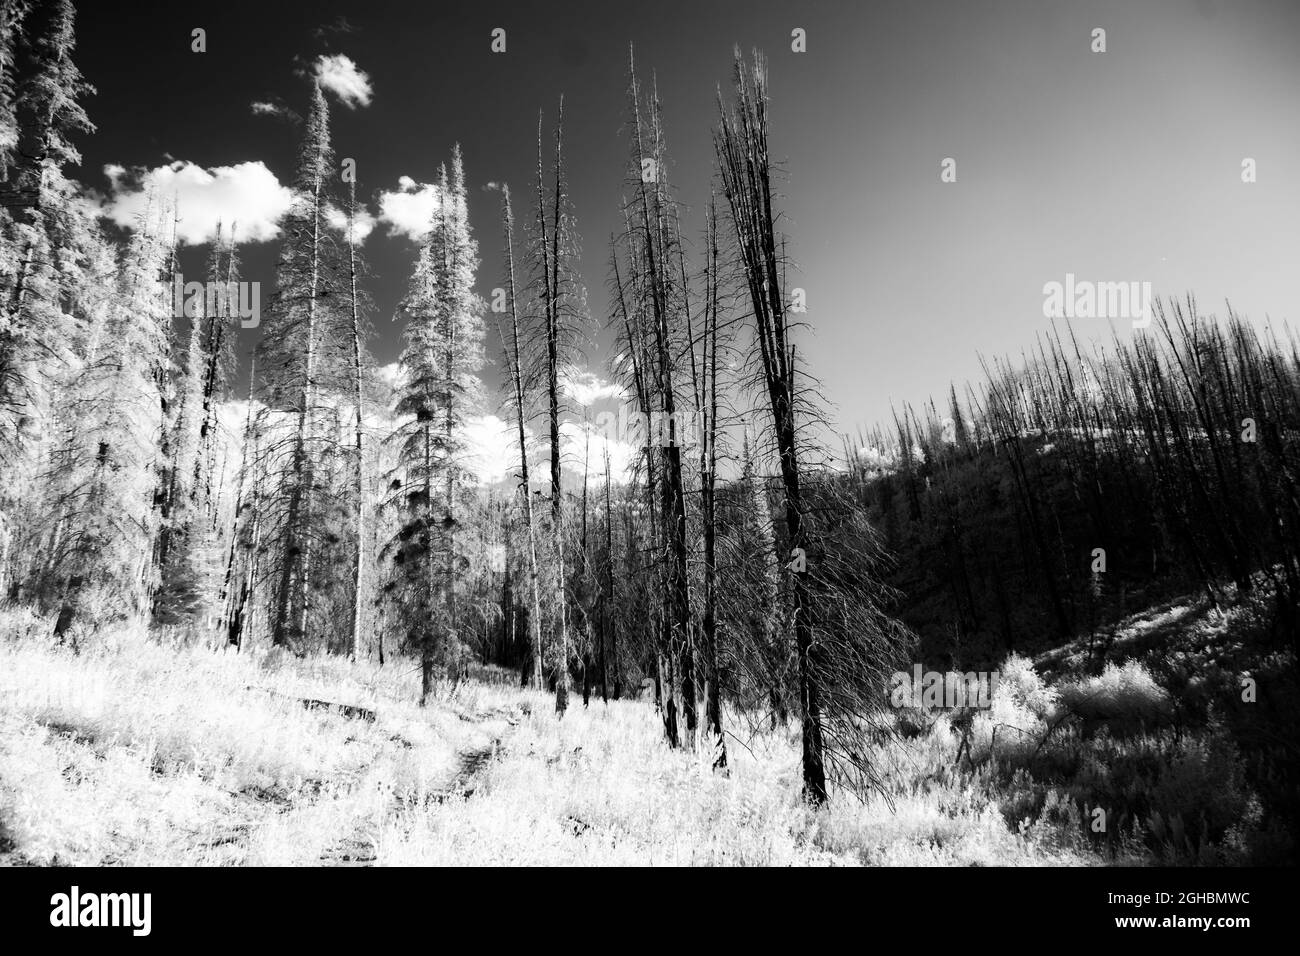 Alcuni alberi di abete rosso morti e danneggiati a nord-ovest di Steamboat Springs in Colorado. Immagine con luce infrarossa bianca e nera. Alcuni alberi sono danni da fuoco. Foto Stock